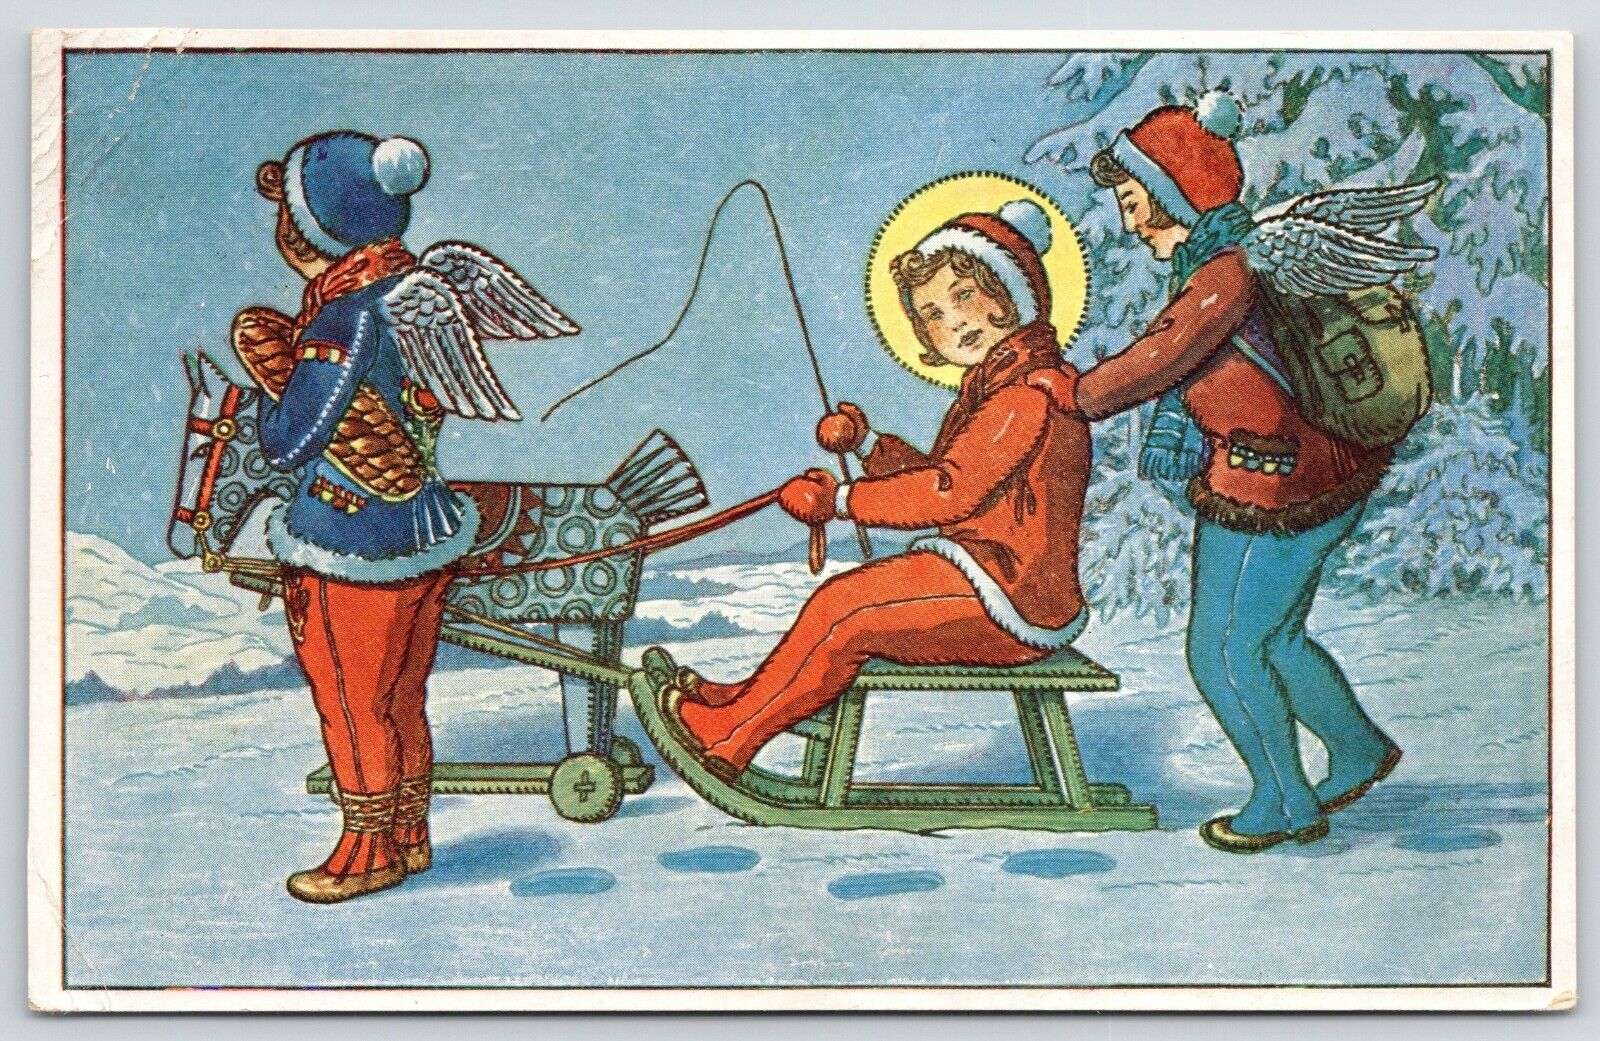 Czech Christmas Fantasy~Wooden Horse Pull Girl on Sled~Angels Push~ART DECO~1930